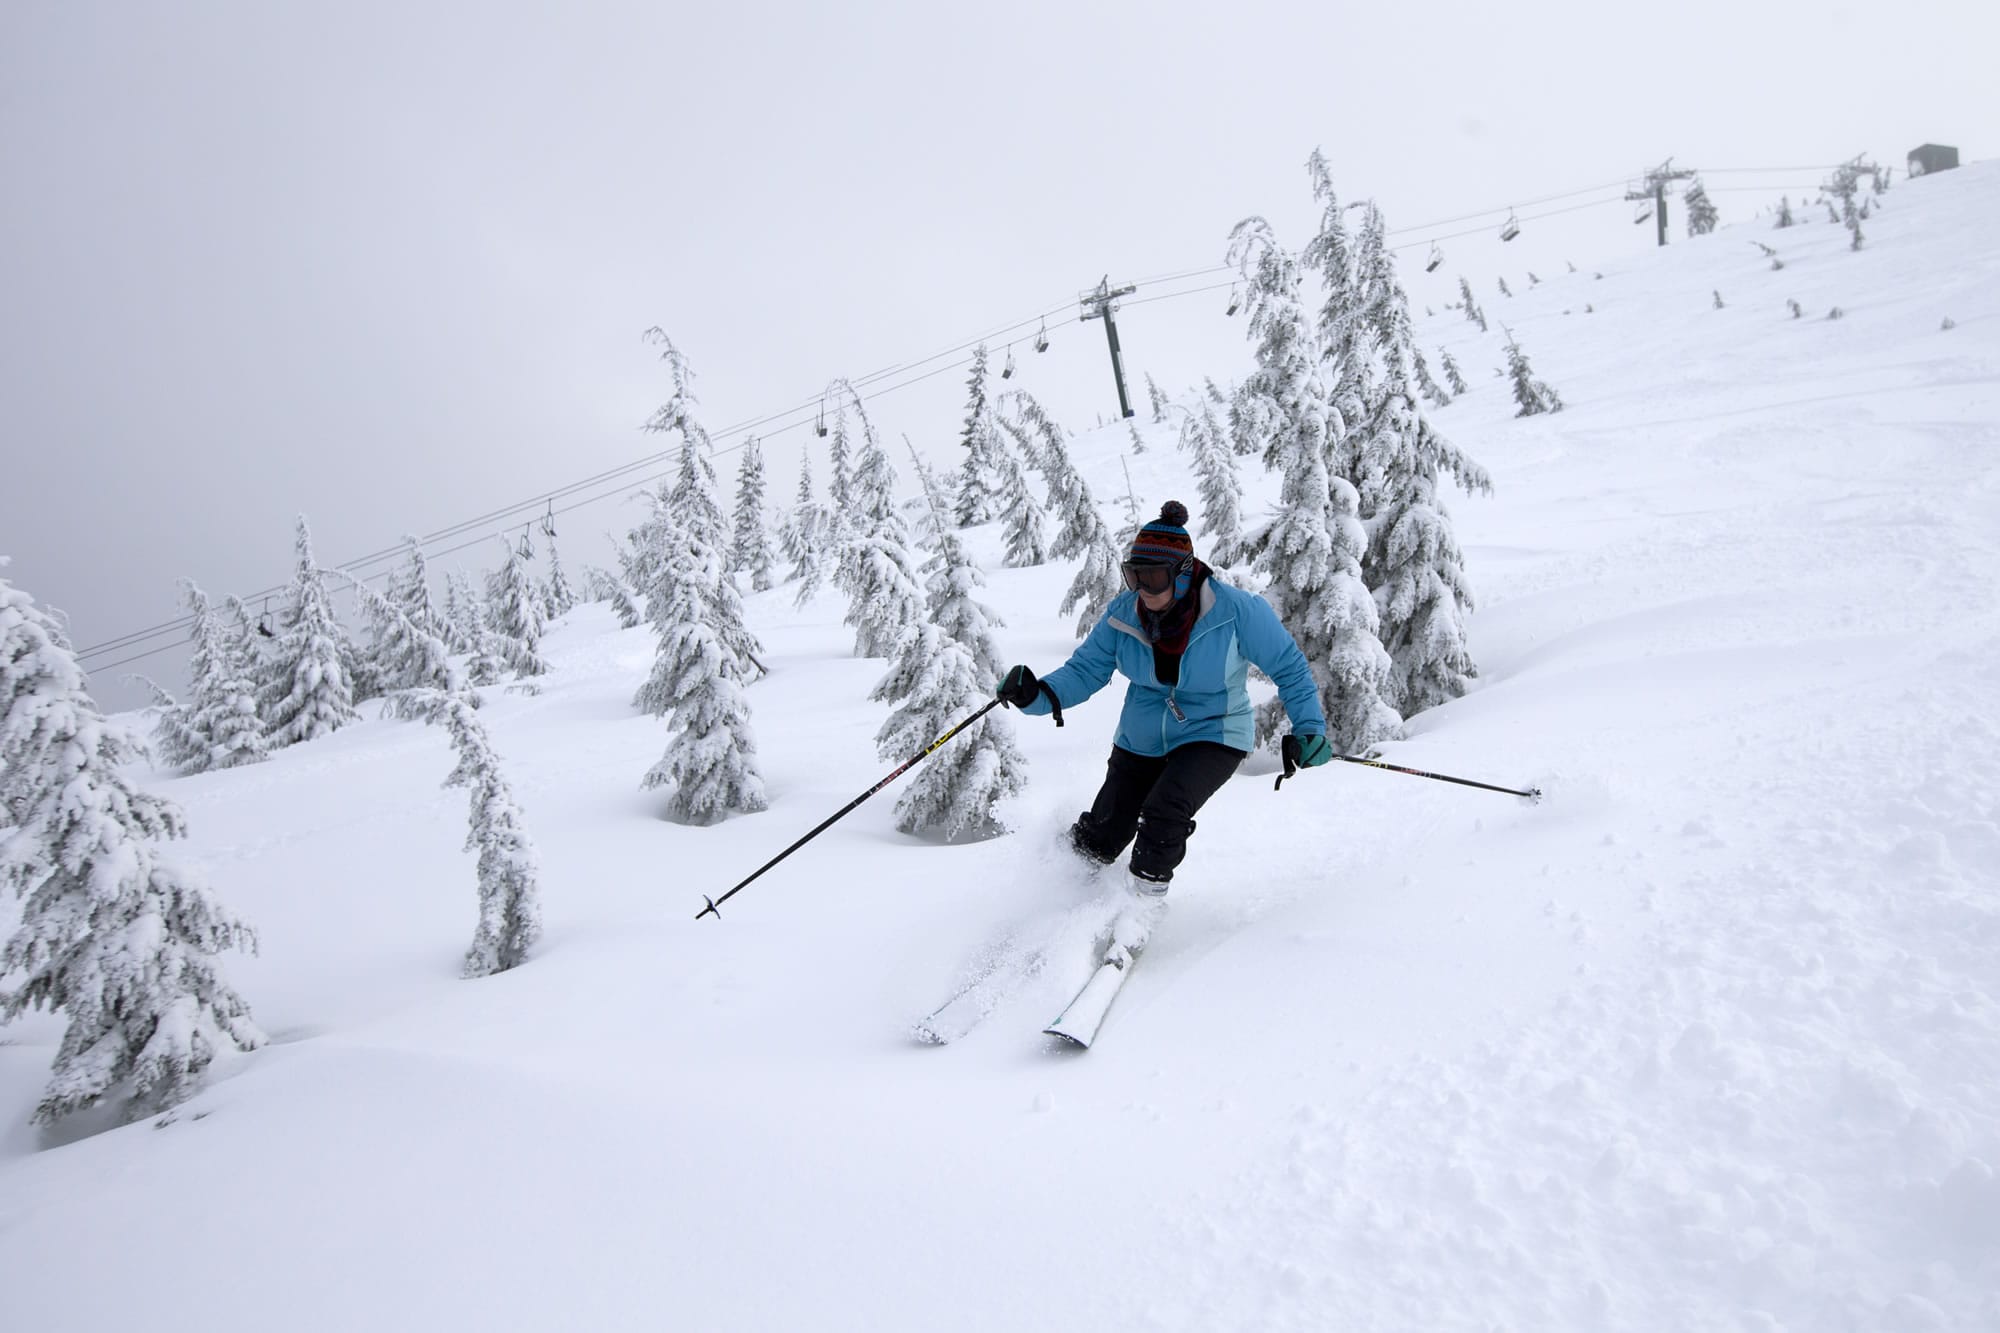 Georgiana Thomas of Corvallis skis down through some fresh snow on the Big Green Machine chairlift at Hoodoo Ski Area.